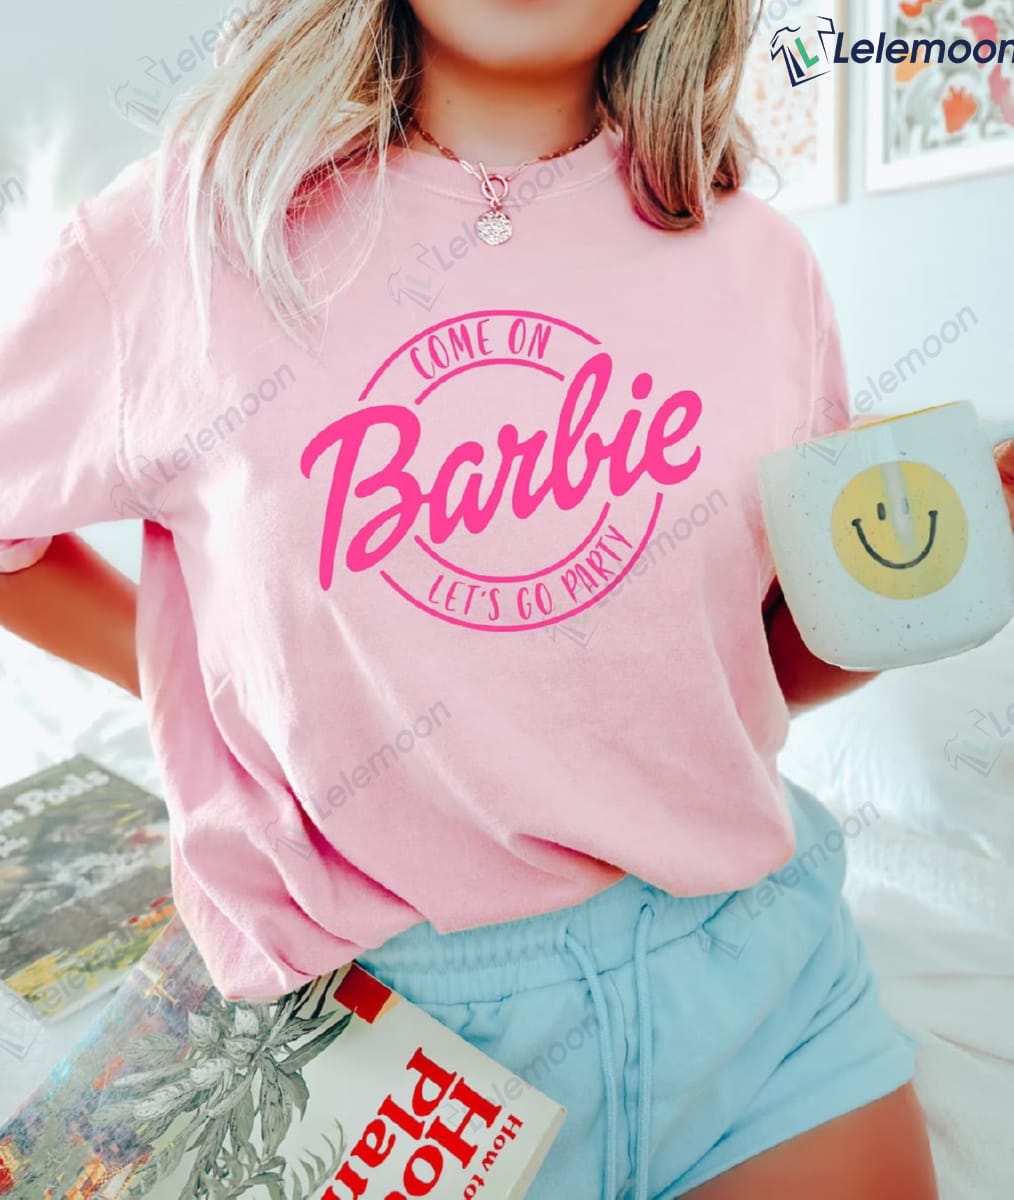 Come On Barbie Let's Go Party T-Shirt - Lelemoon